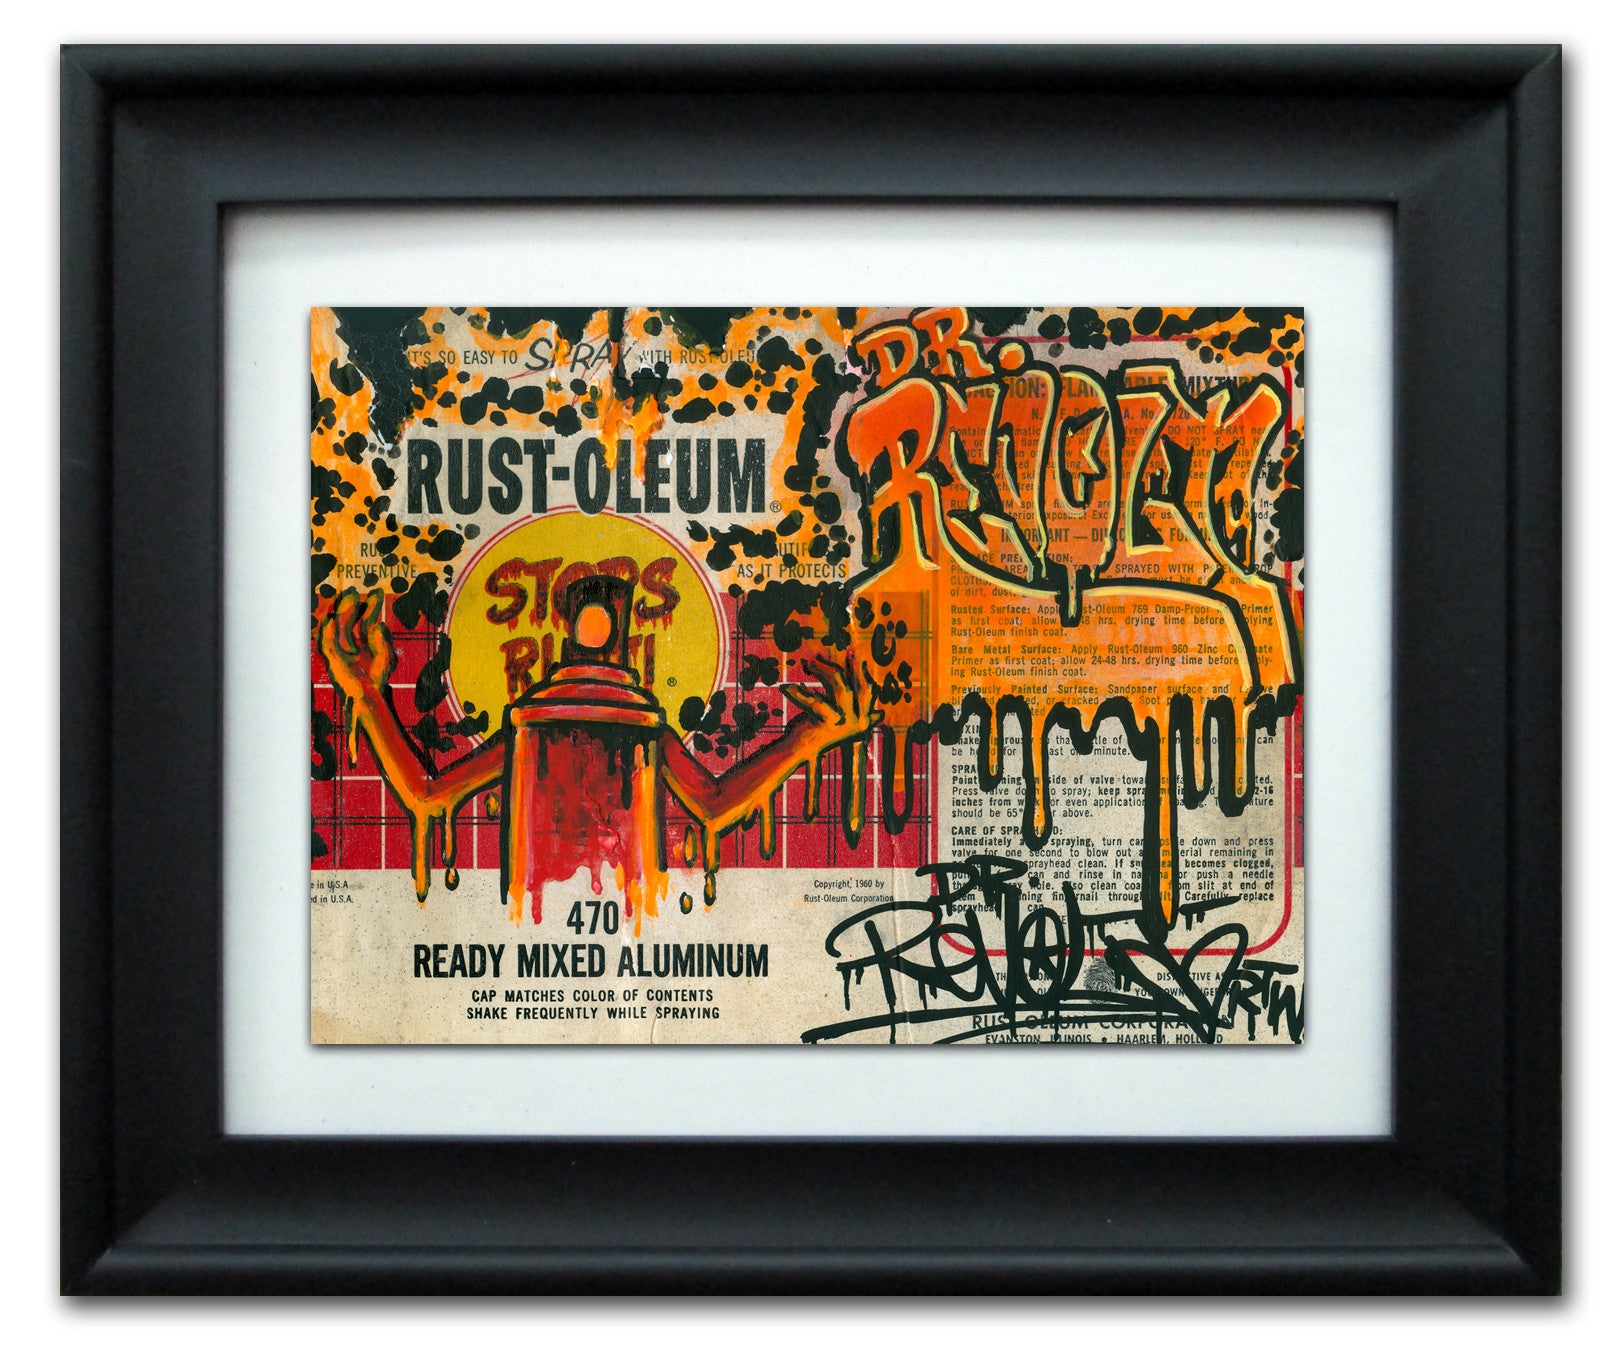 DR REVOLT - "Rustoleum" Vintage Label